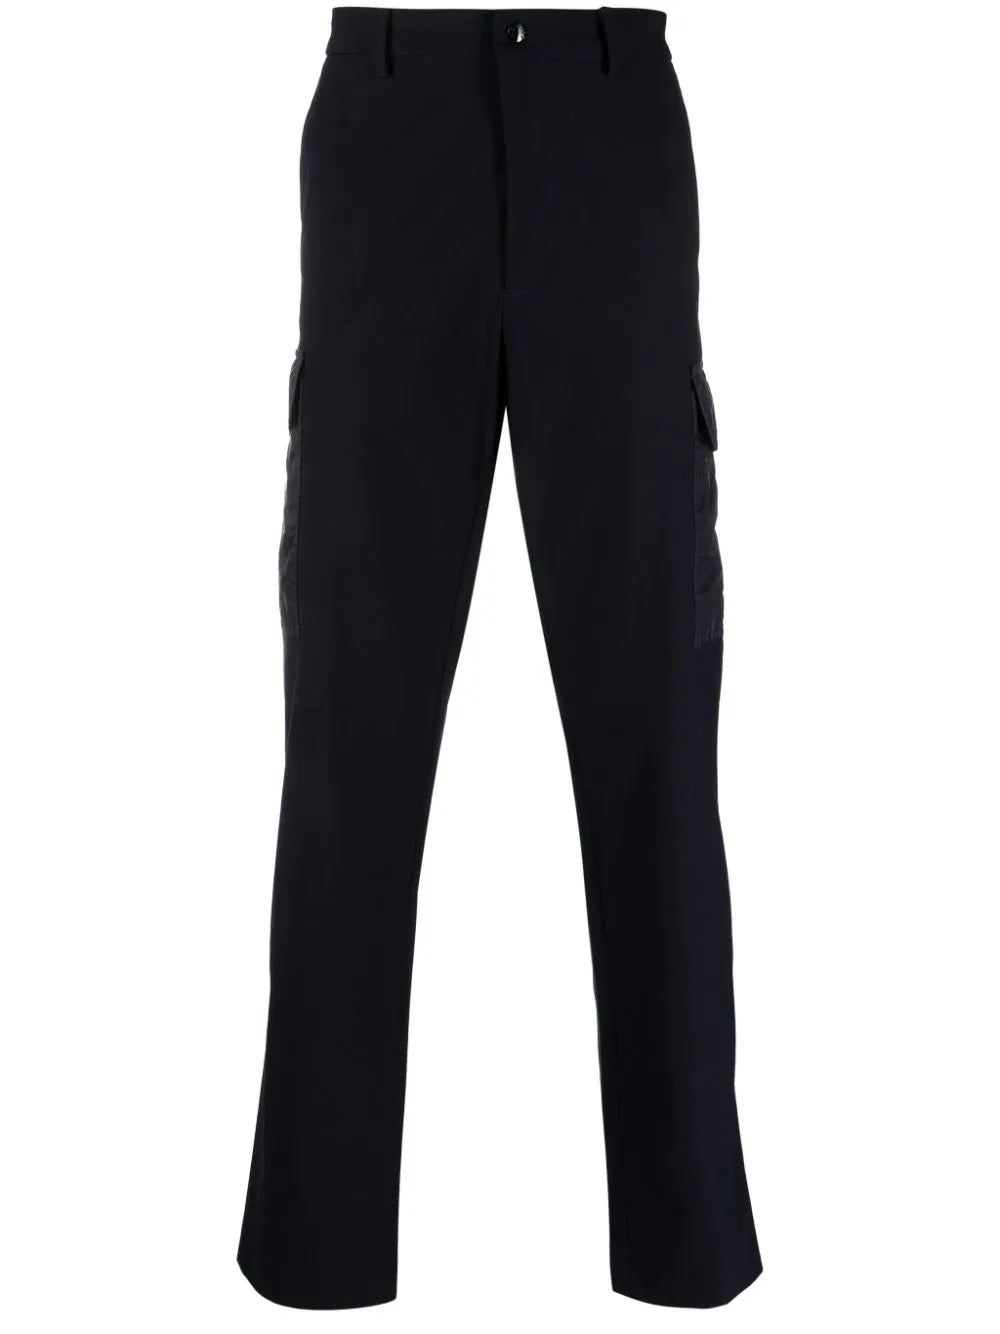 MONCLER MEN Jersey Felt Logo Patch Trousers Navy - MAISONDEFASHION.COM